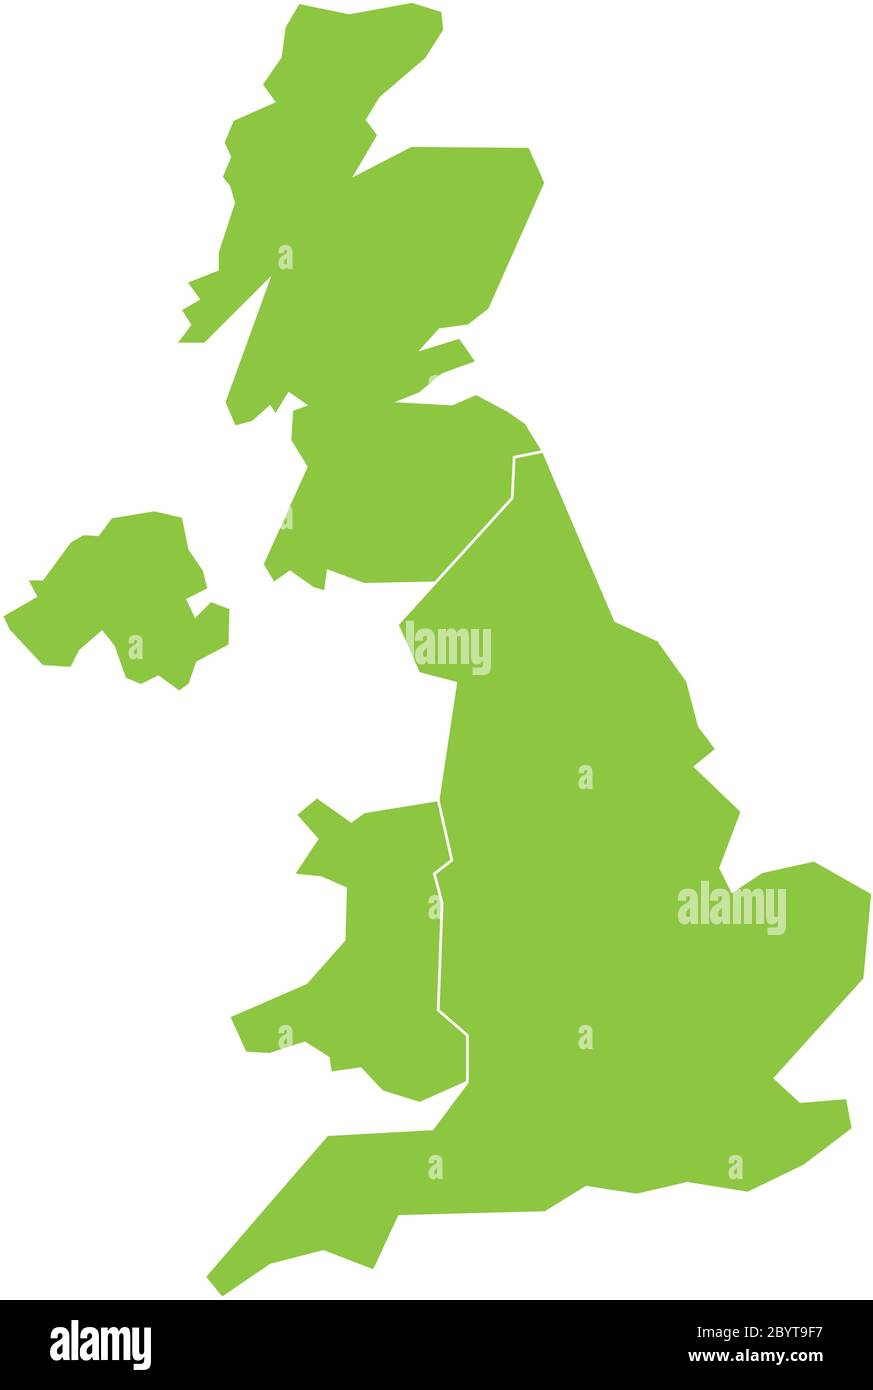 Großbritannien, Großbritannien, Großbritannien und Nordirland Karte. Aufgeteilt in vier Länder - England, Wales, Schottland und NI. Einfache flache grüne Vektorgrafik. Stock Vektor